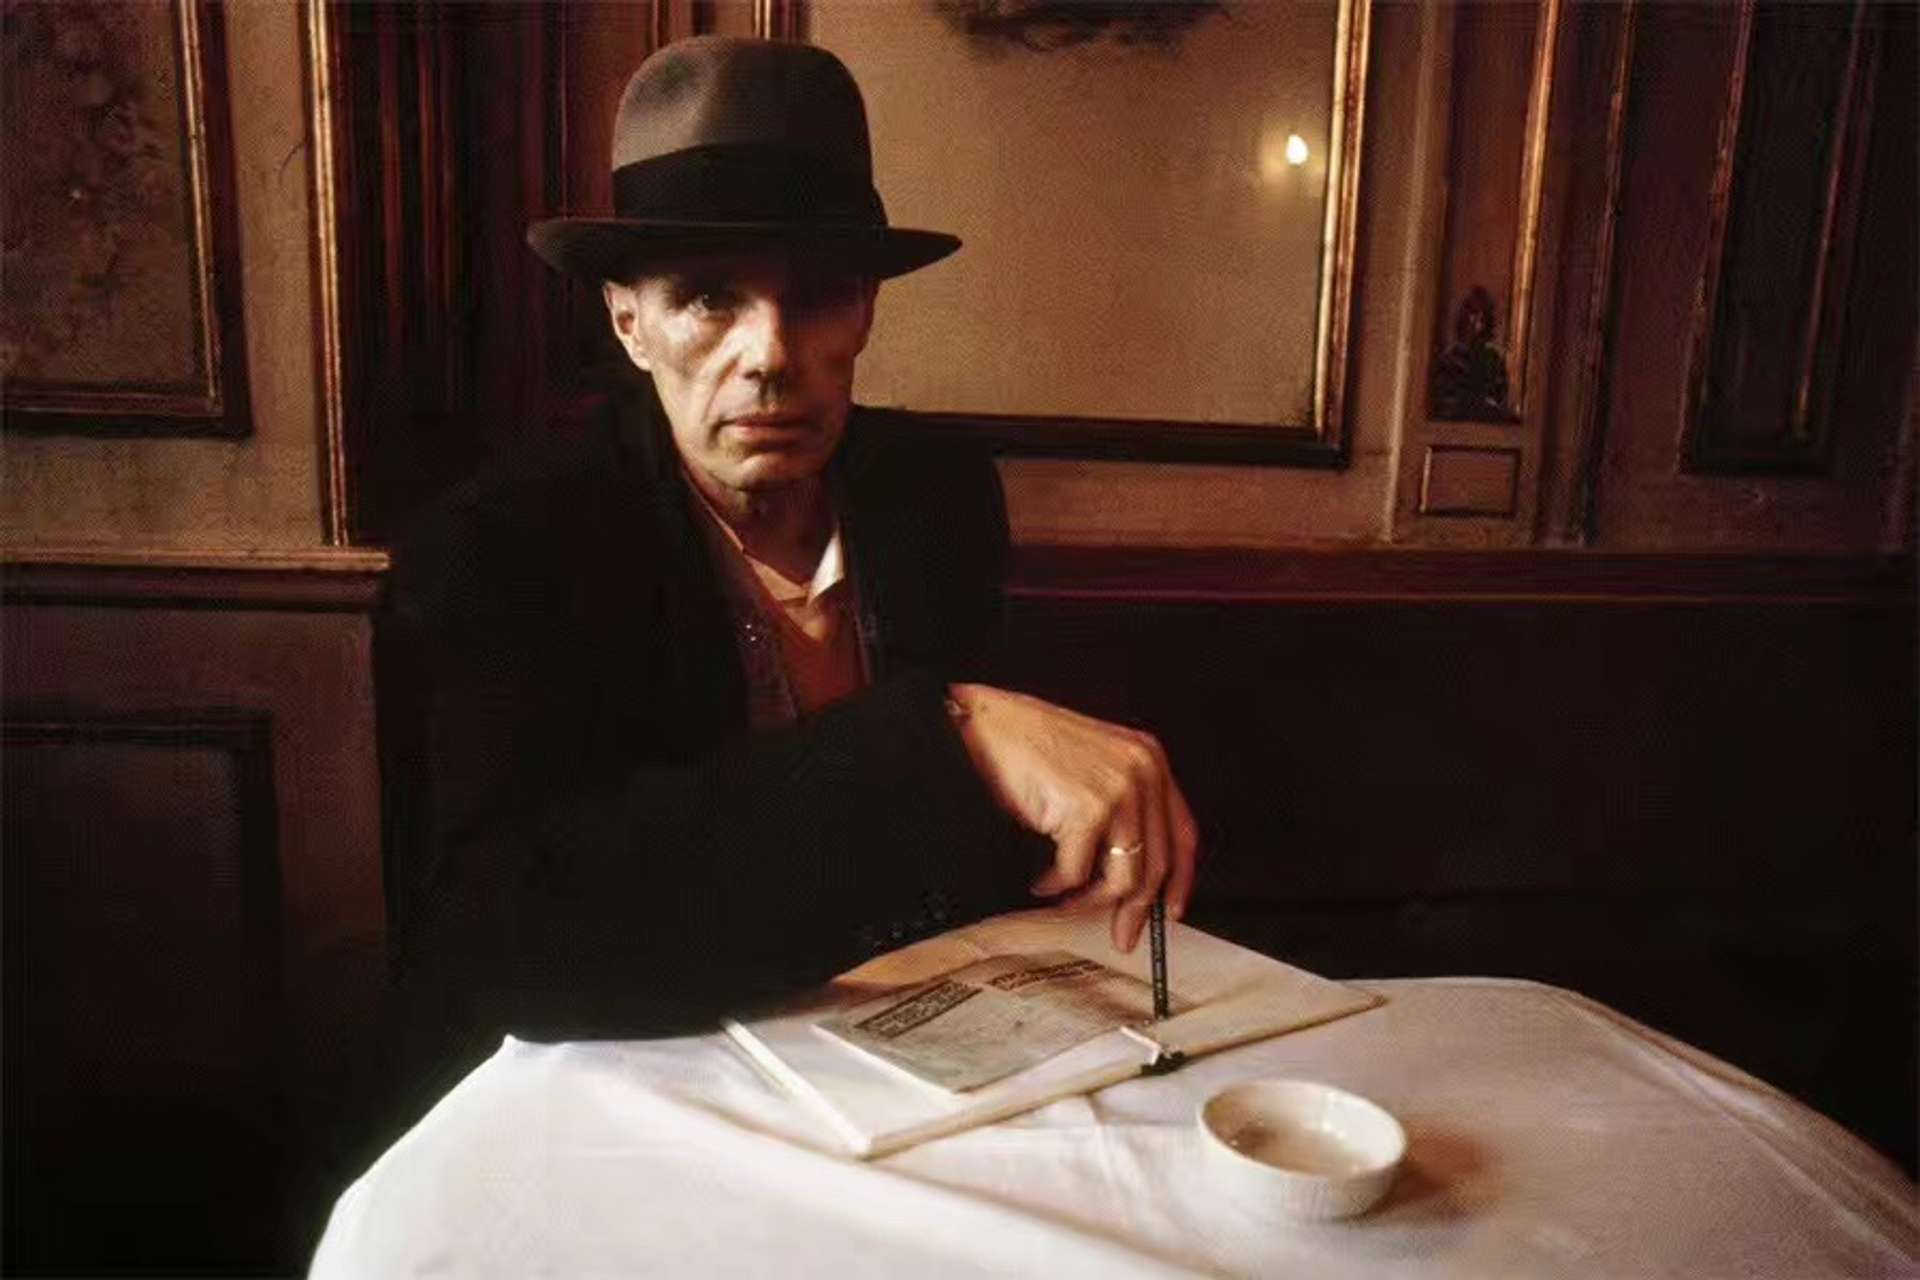 Burkhard von Harder, German Artist Joseph Beuys, Cafe Florian, Venice 1983 c Burkhard von Harder, CC BY-SA 4.0